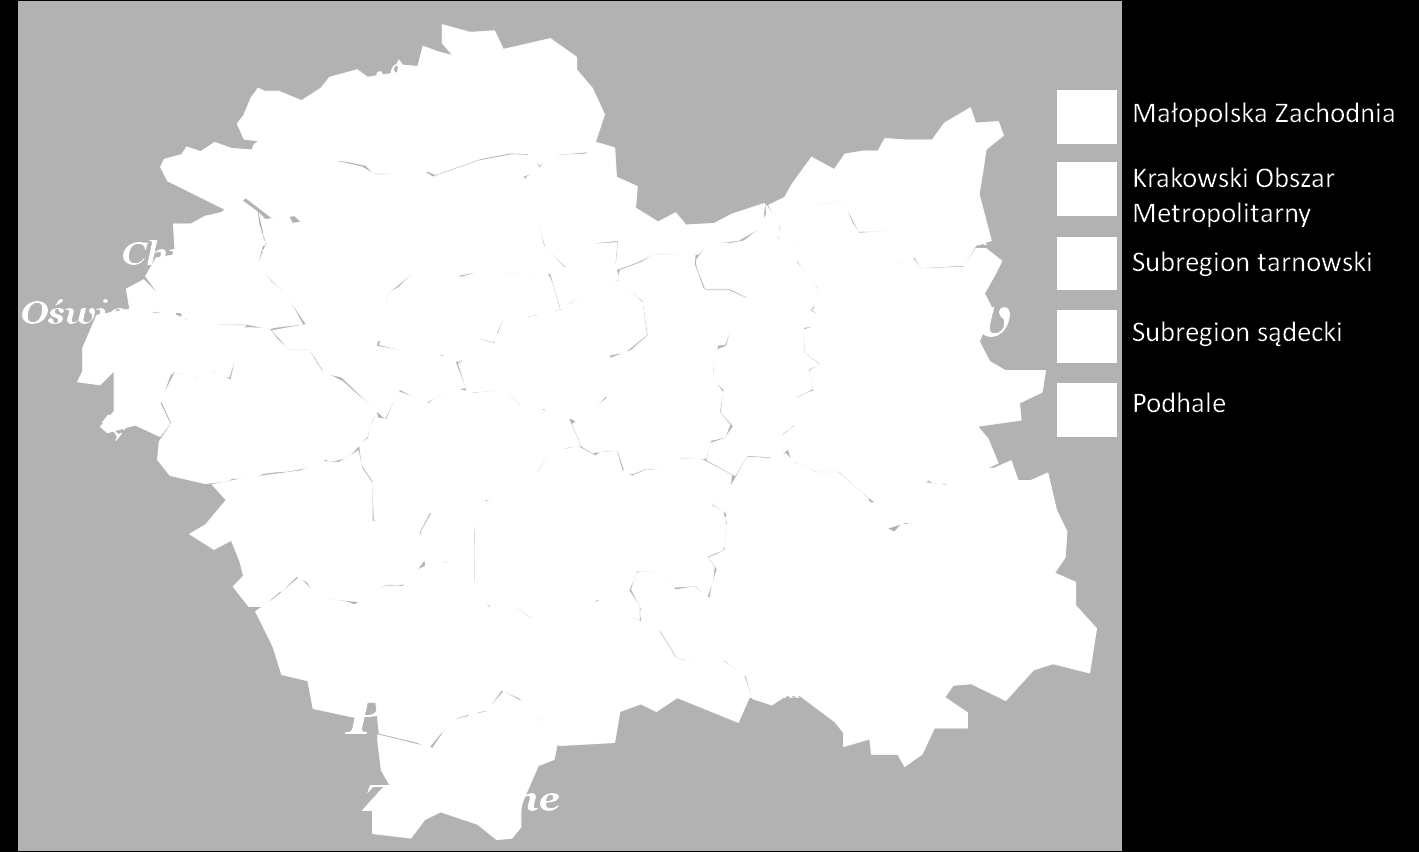 Czerwoną czcionką oznaczono miejscowości, szarą czcionką - większe regiony wskazywane zbiorczo.